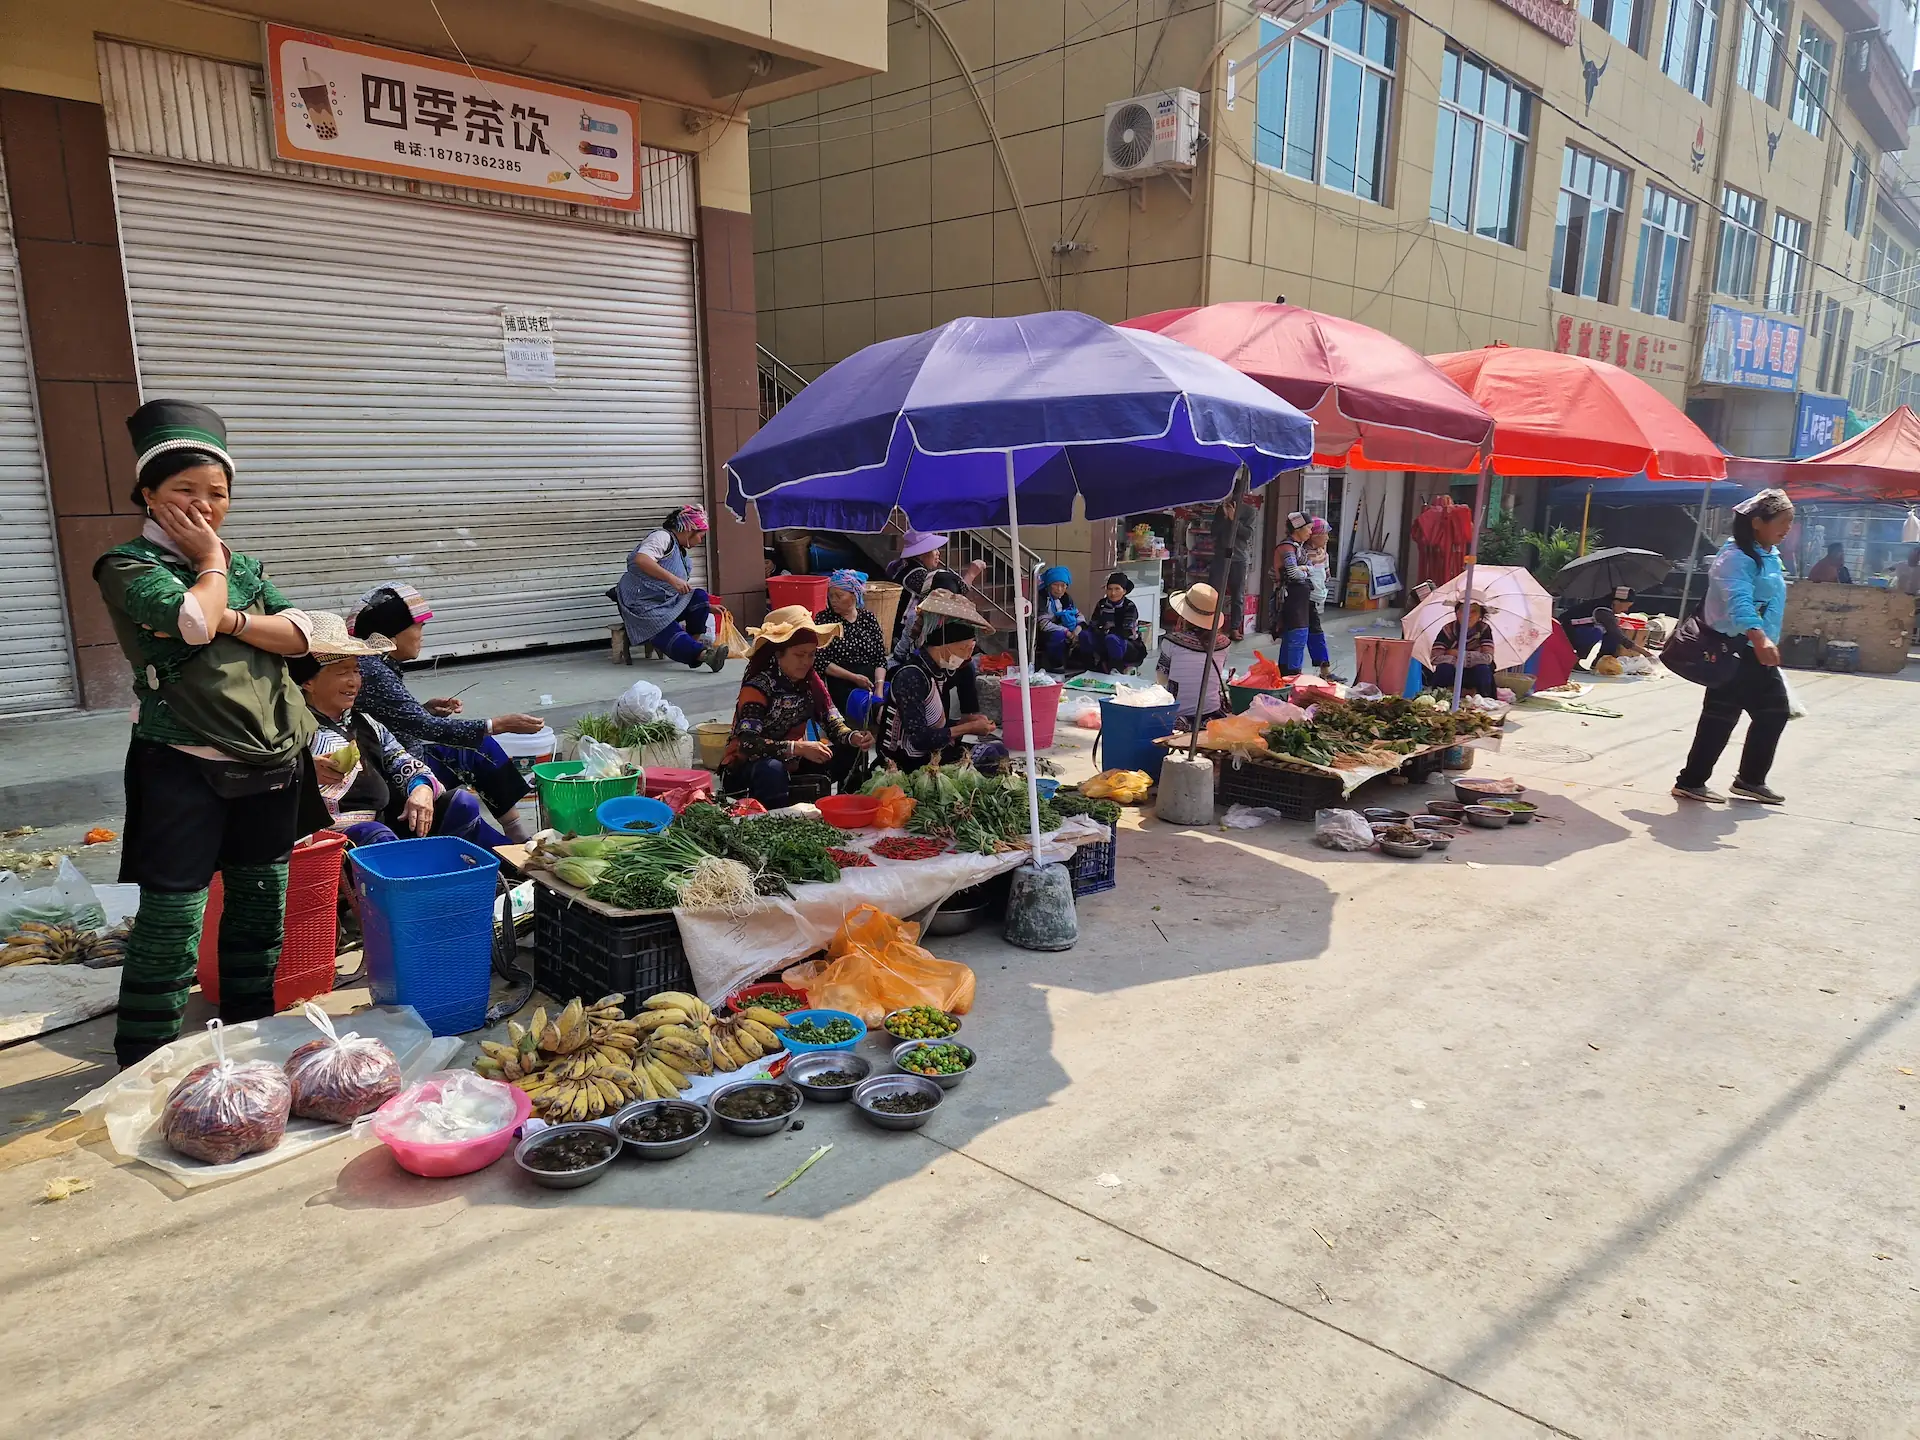 Des vendeuses en habits traditionnels proposent leurs légumes et produits à même le sol. Quelques parasols sont ouverts pour les protéger du soleil.